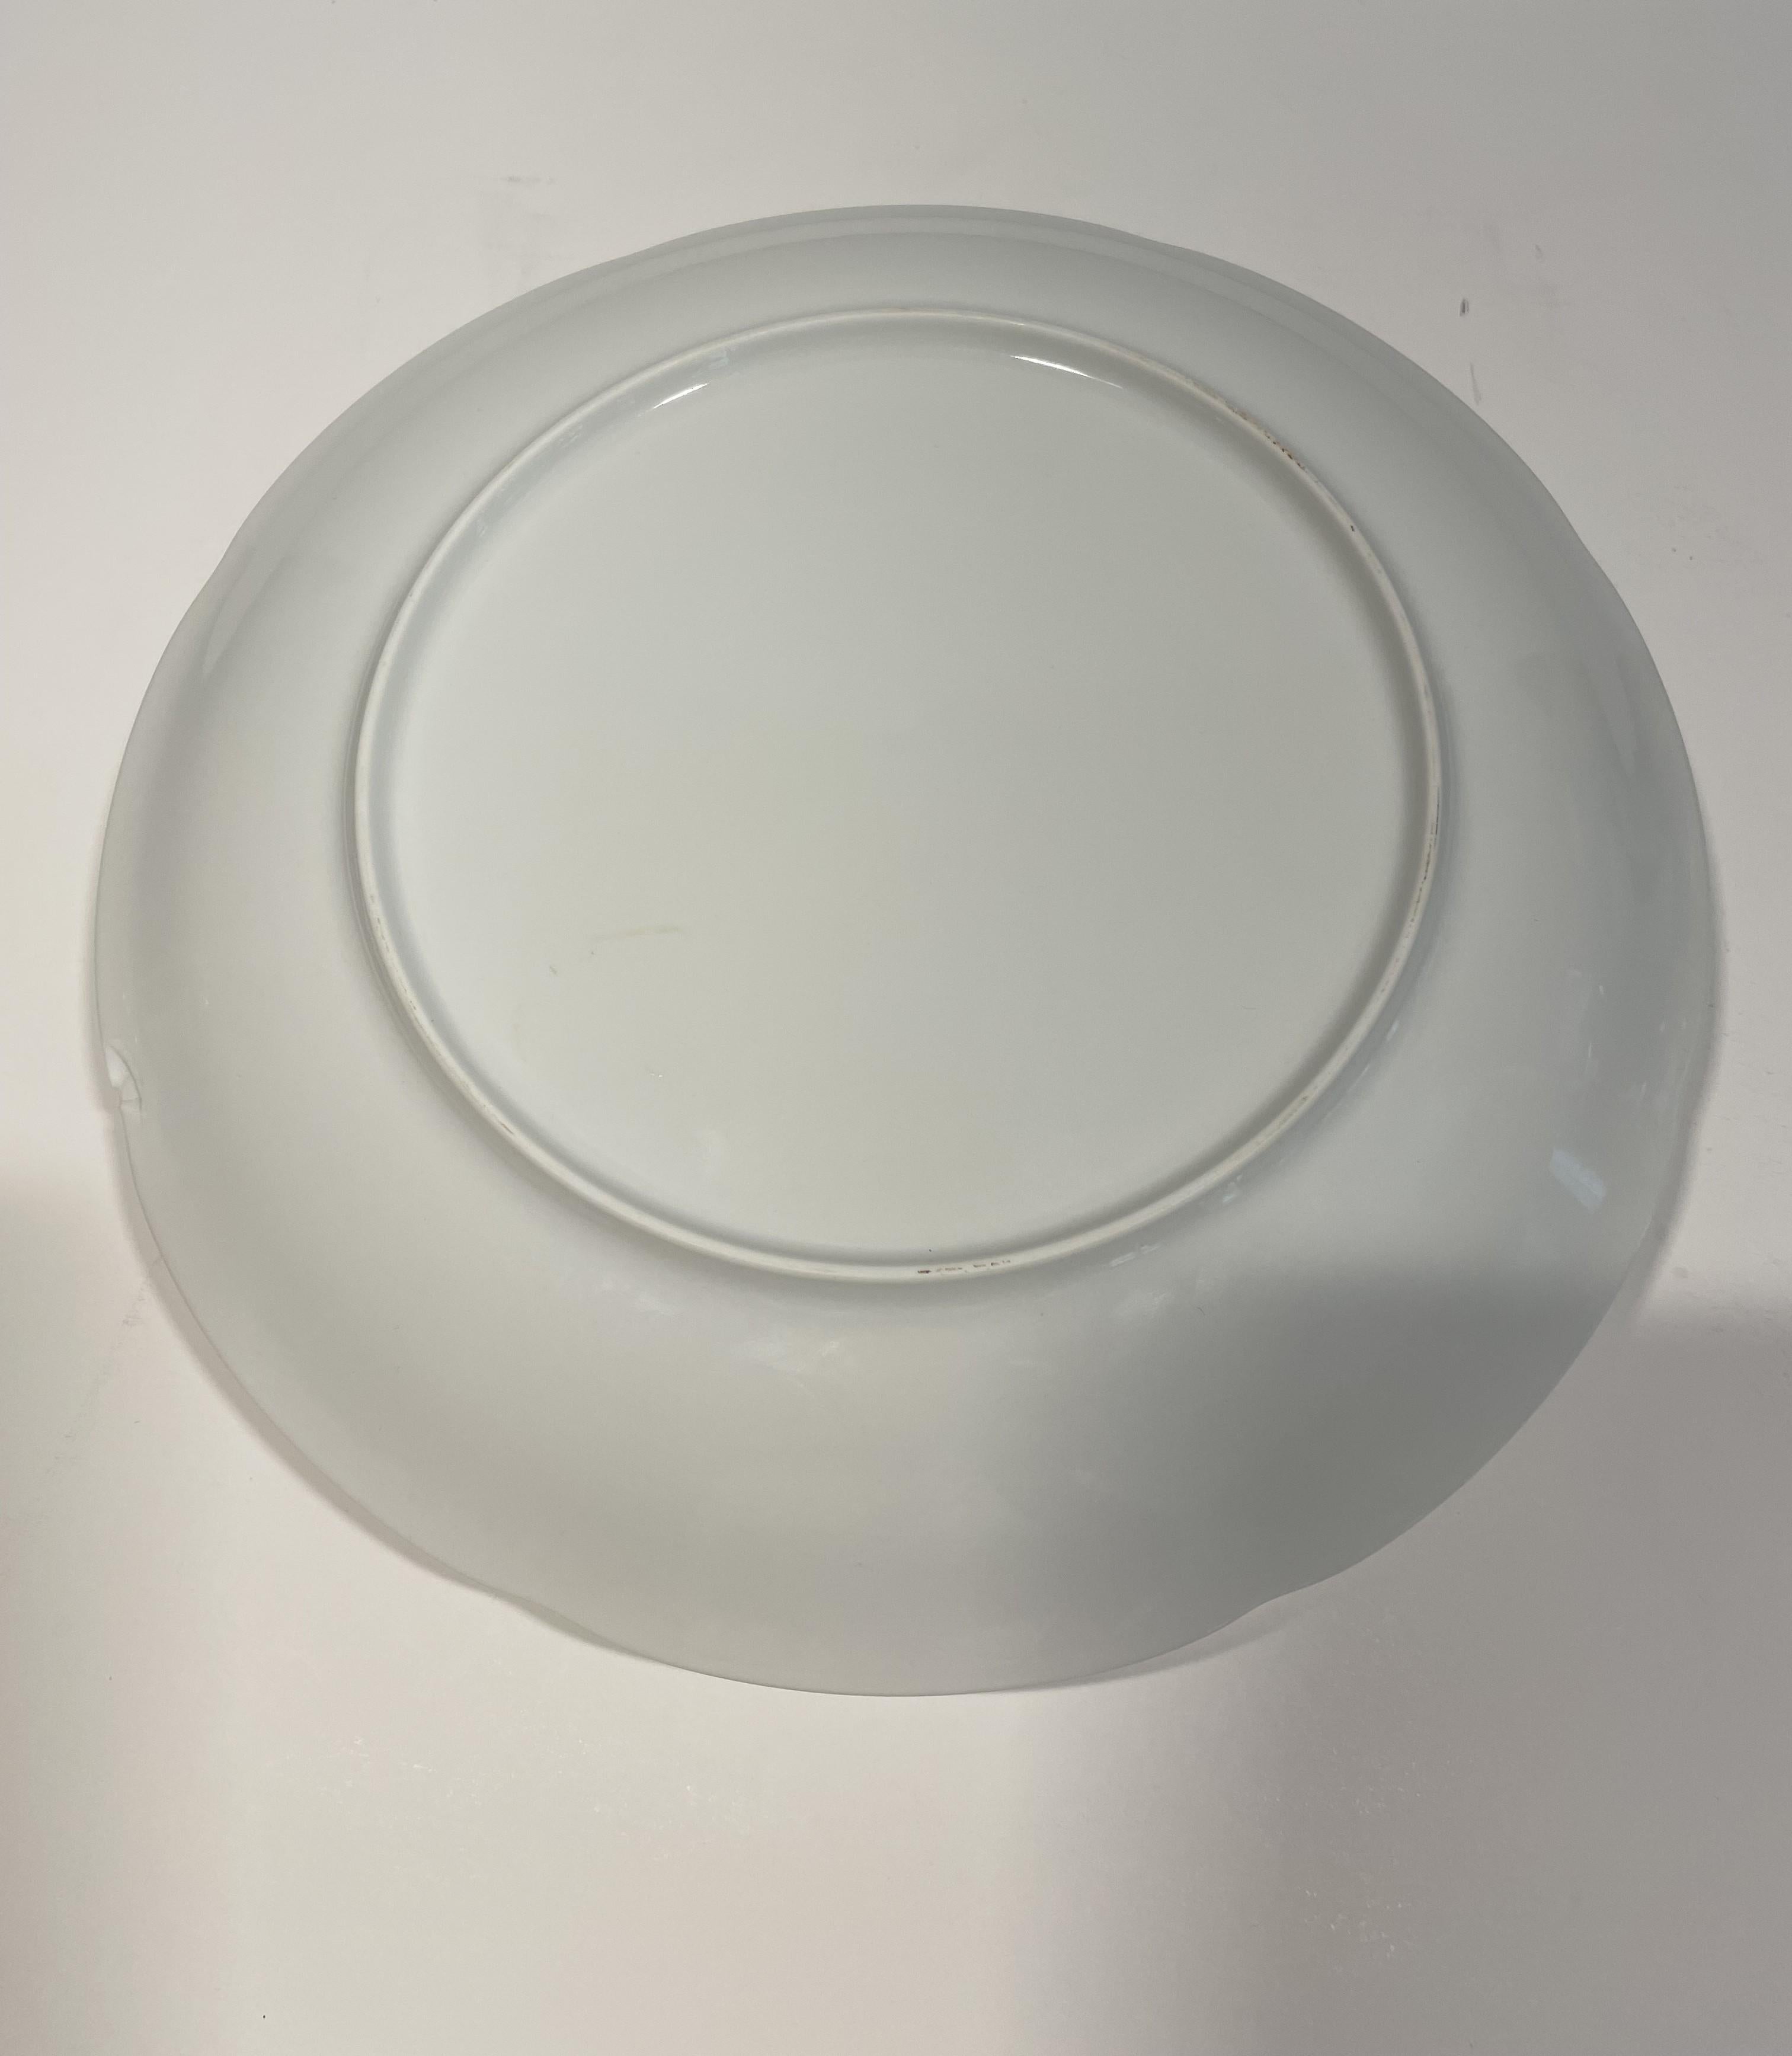 White French Porcelain Art Deco Dinner or Desert Plates - Set of 4 For Sale 2